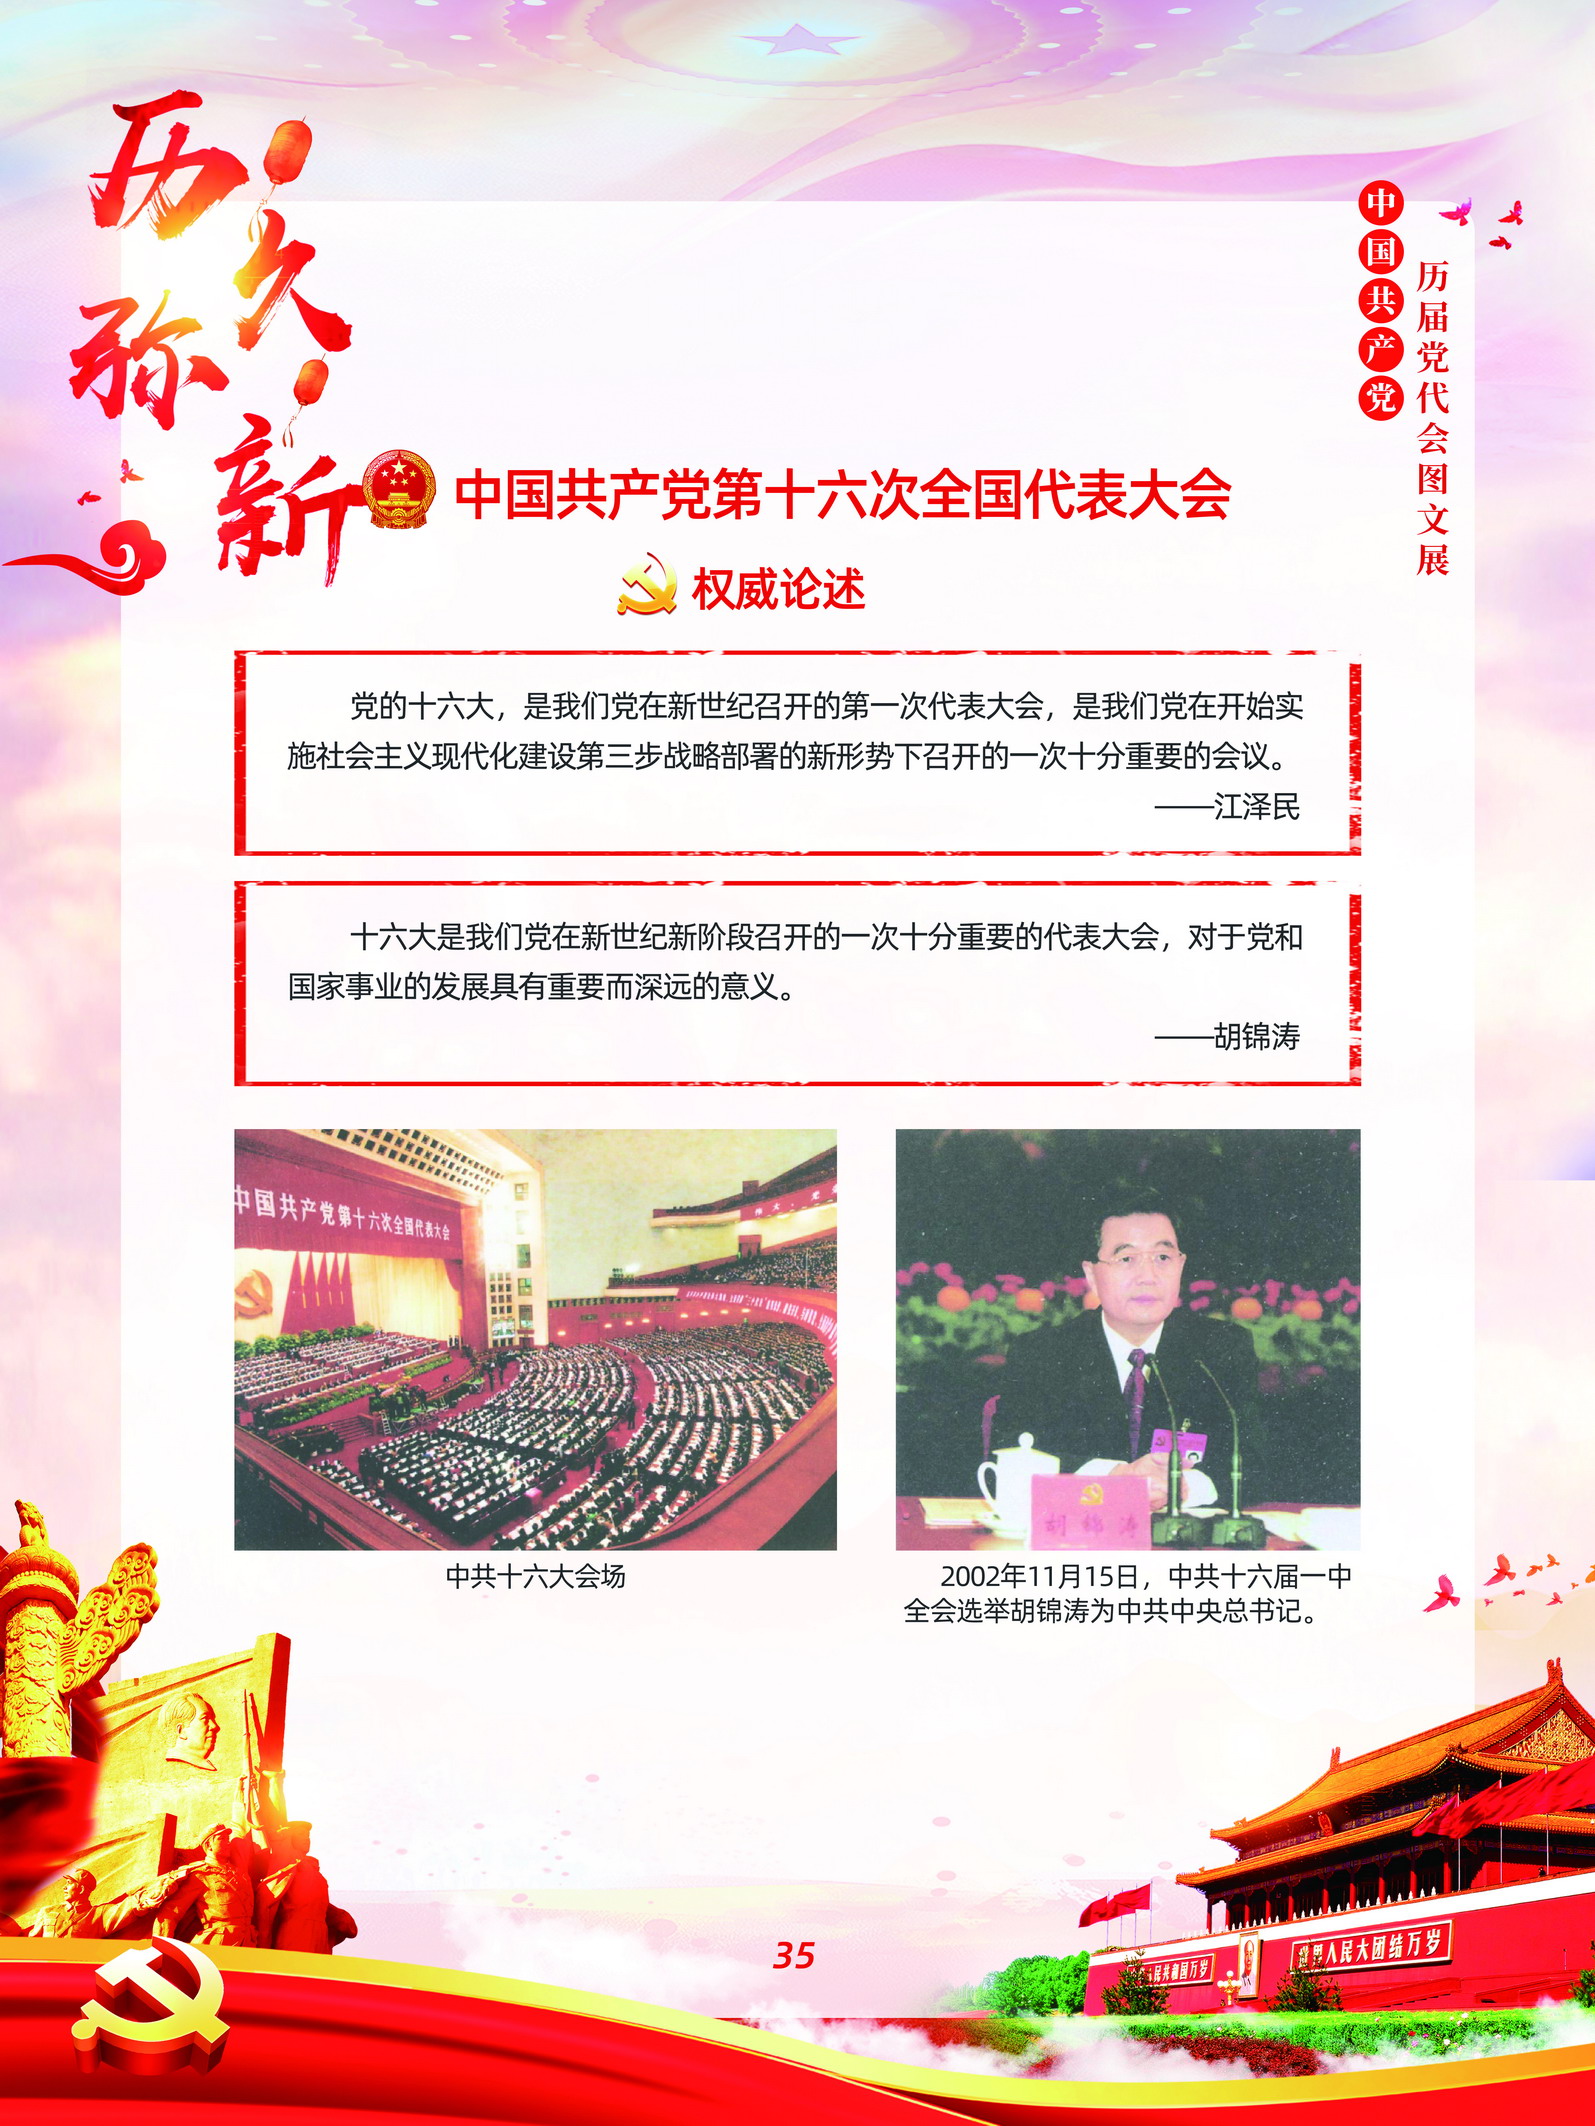 中国共产党历届党代会图文展_图34